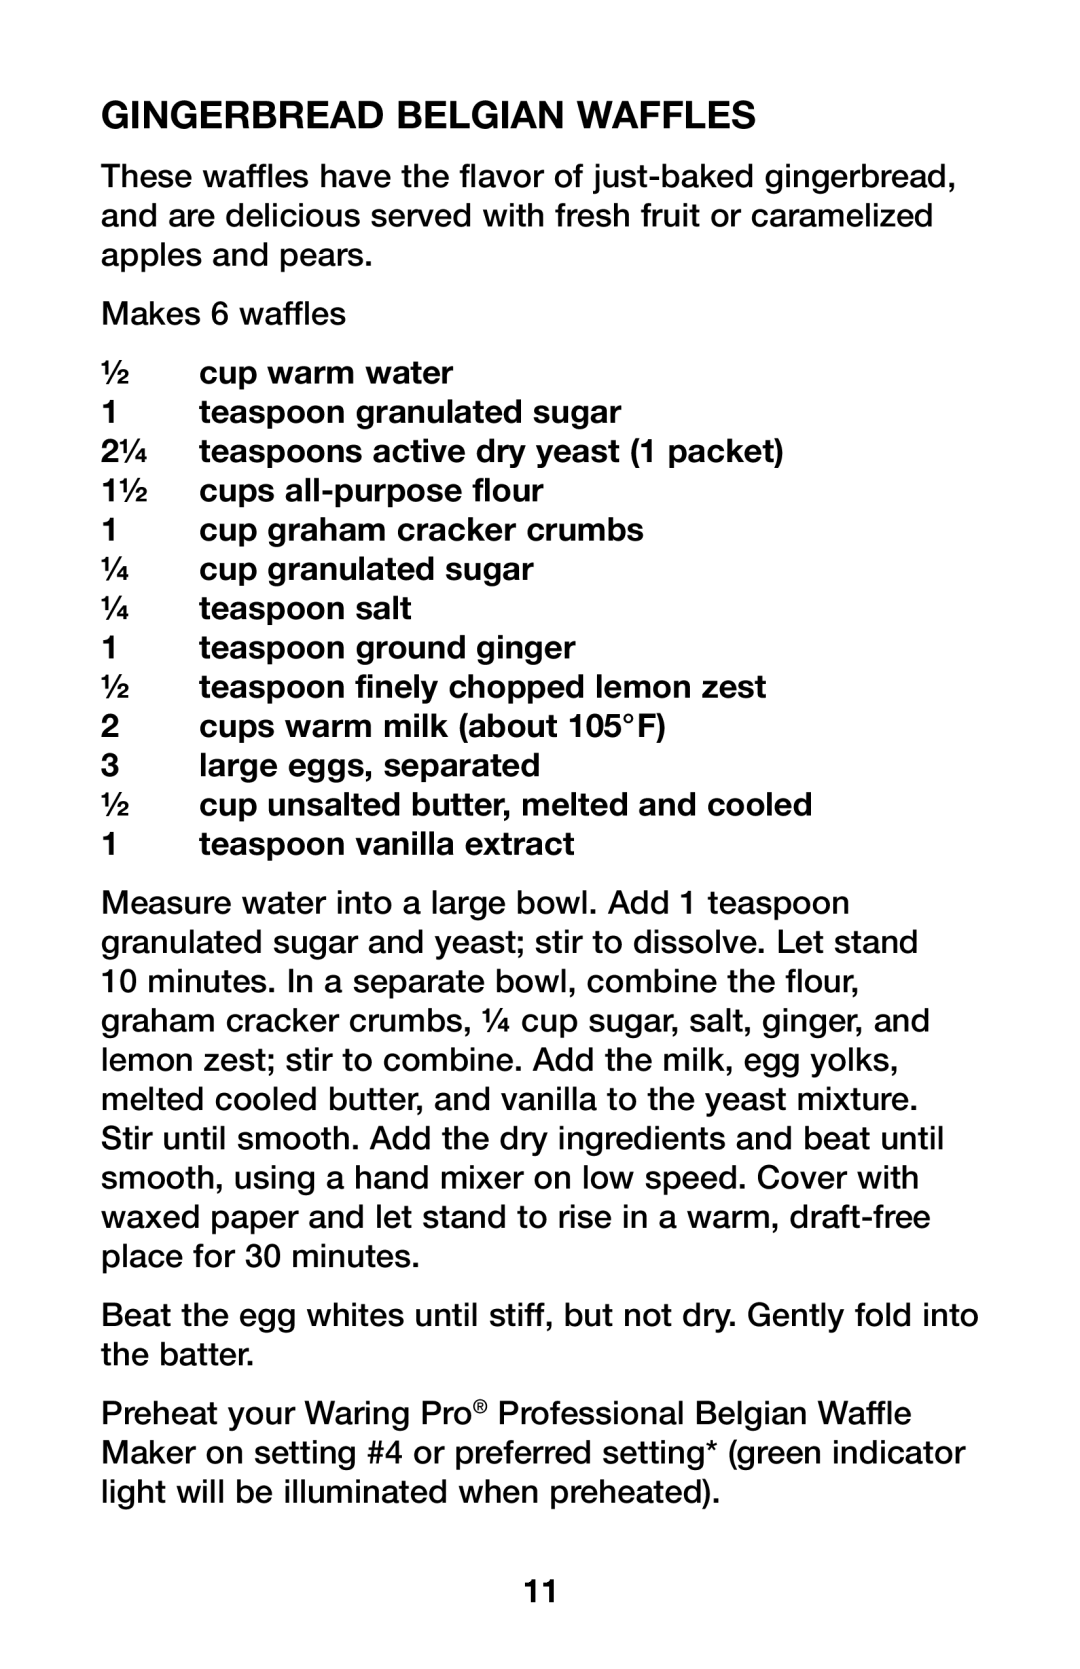 Waring WMK600 manual Gingerbread Belgian Waffles, ½cup warm water 1 teaspoon granulated sugar, teaspoon vanilla extract 